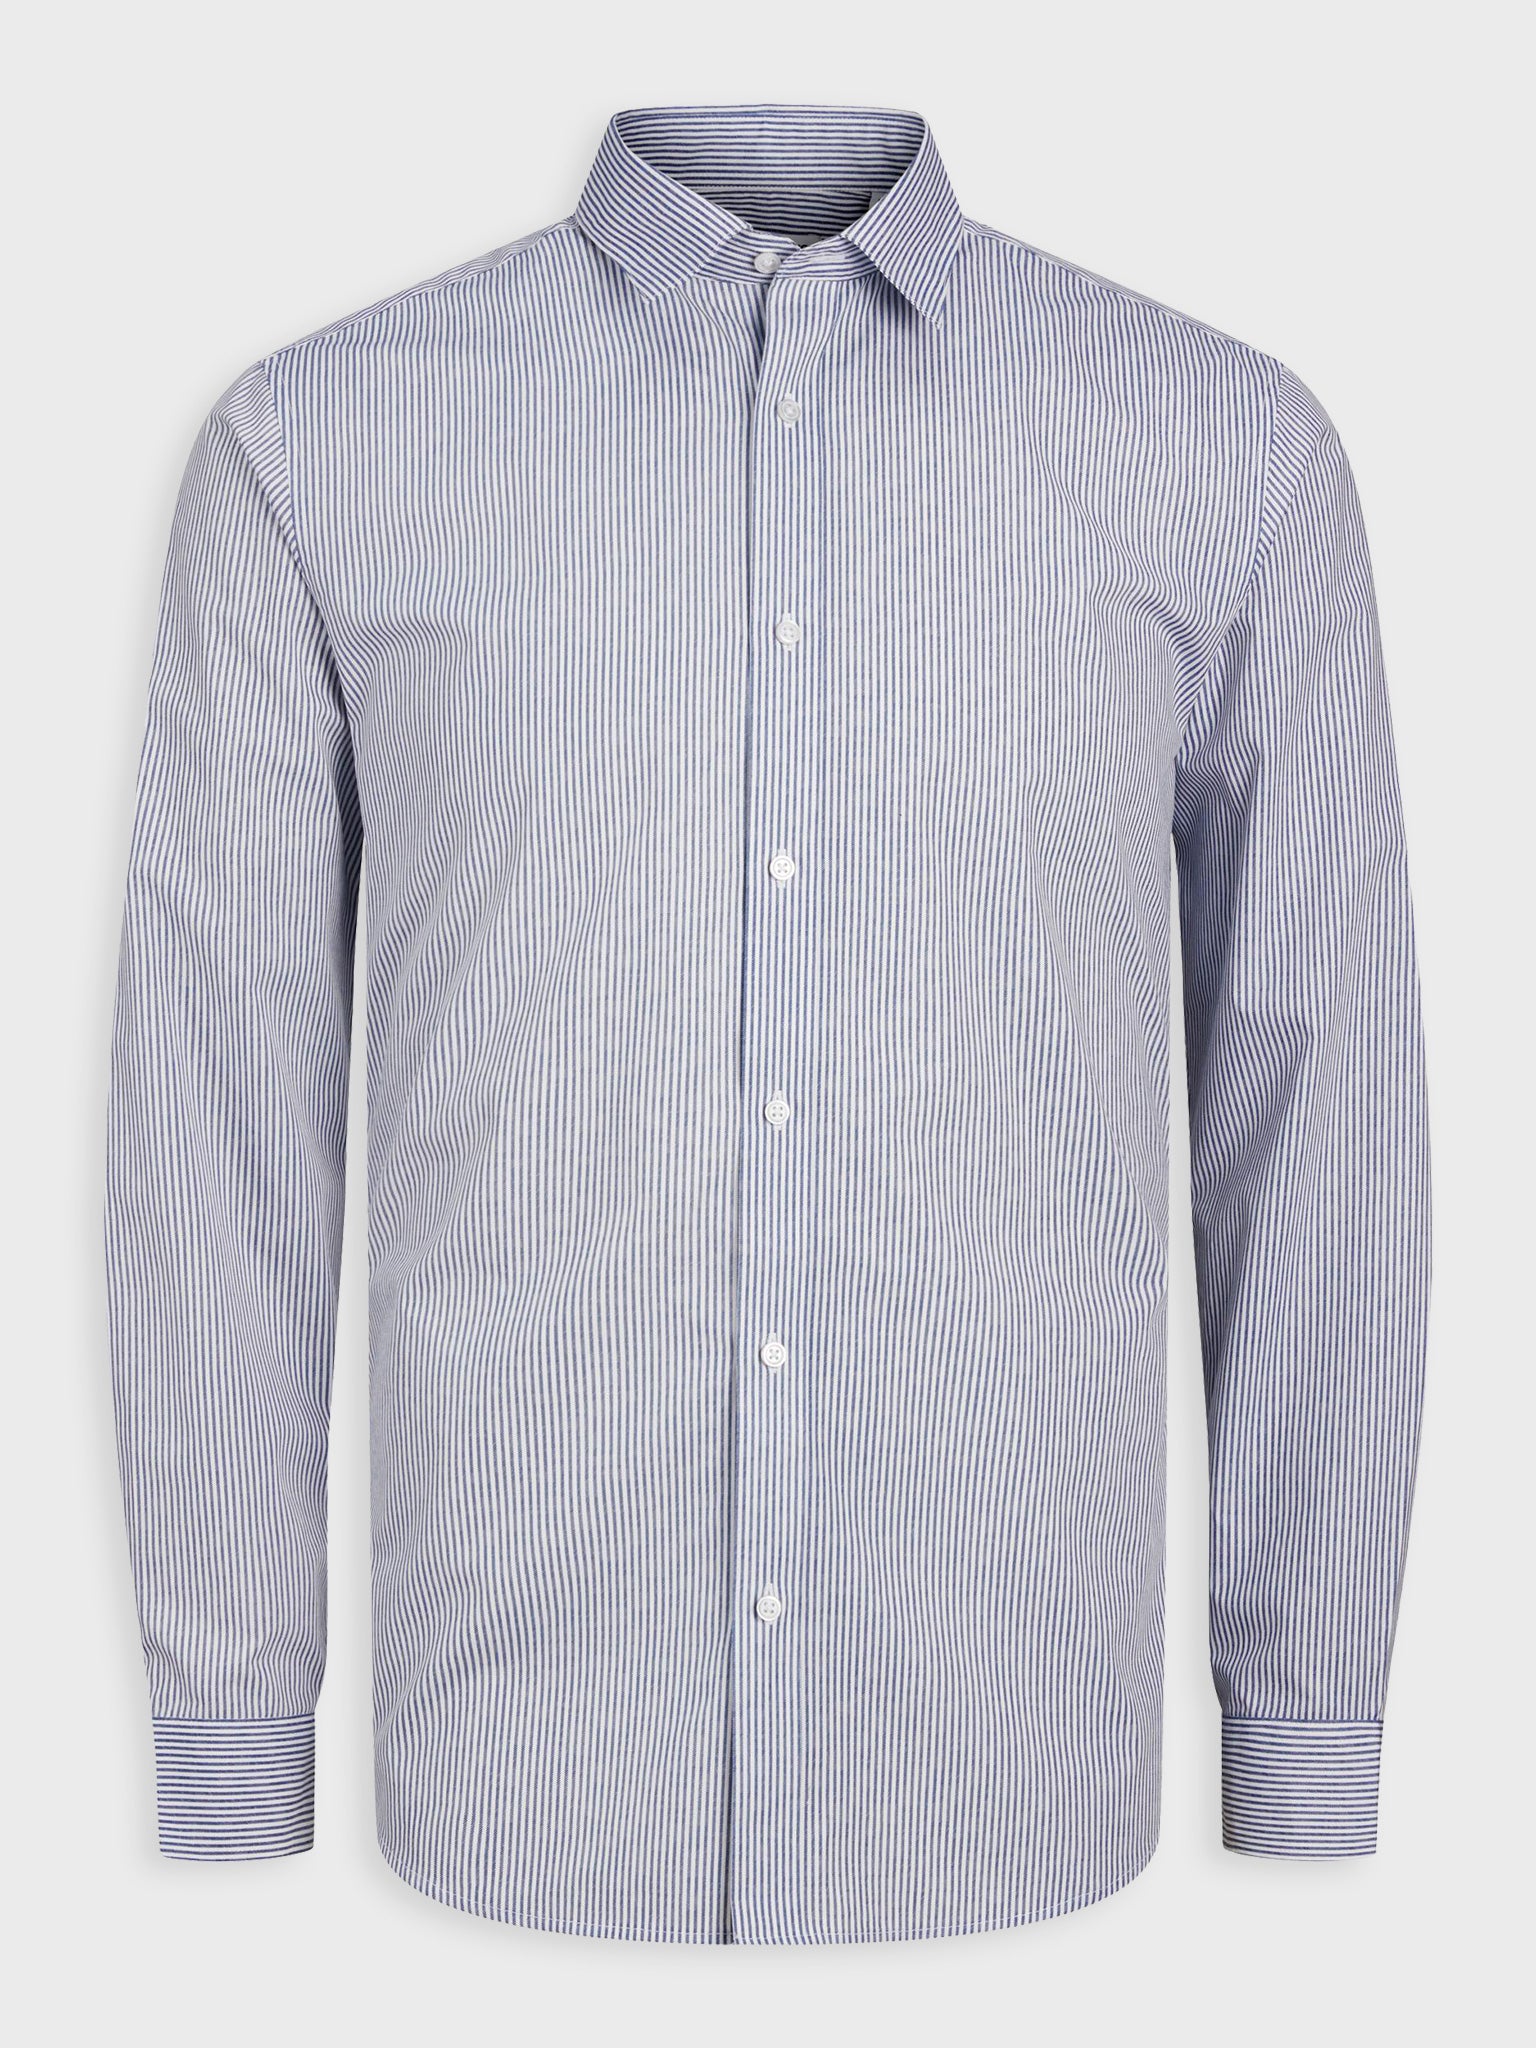 Ανδρικό πουκάμισο ριγέ JJJOE PRINT SHIRT LS SS24 12254540 | 12254540